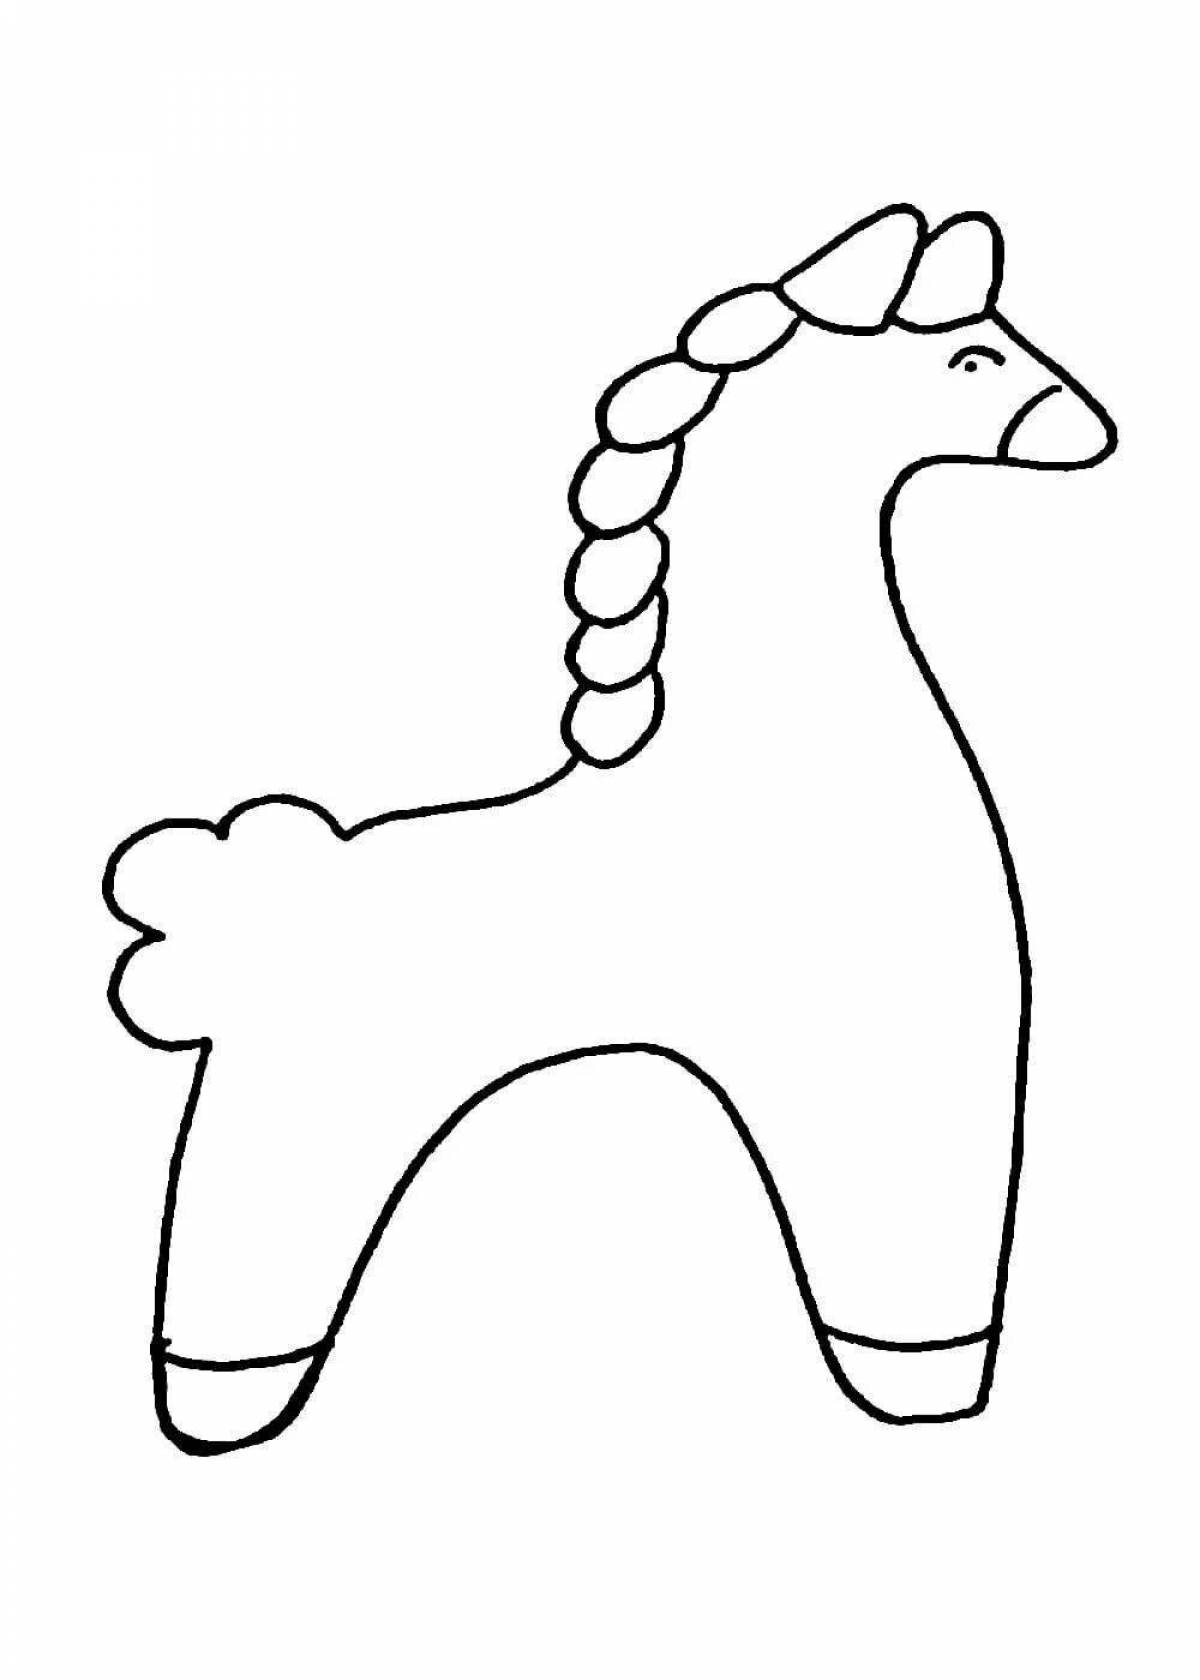 Анимационный дымковский игрушечный олень